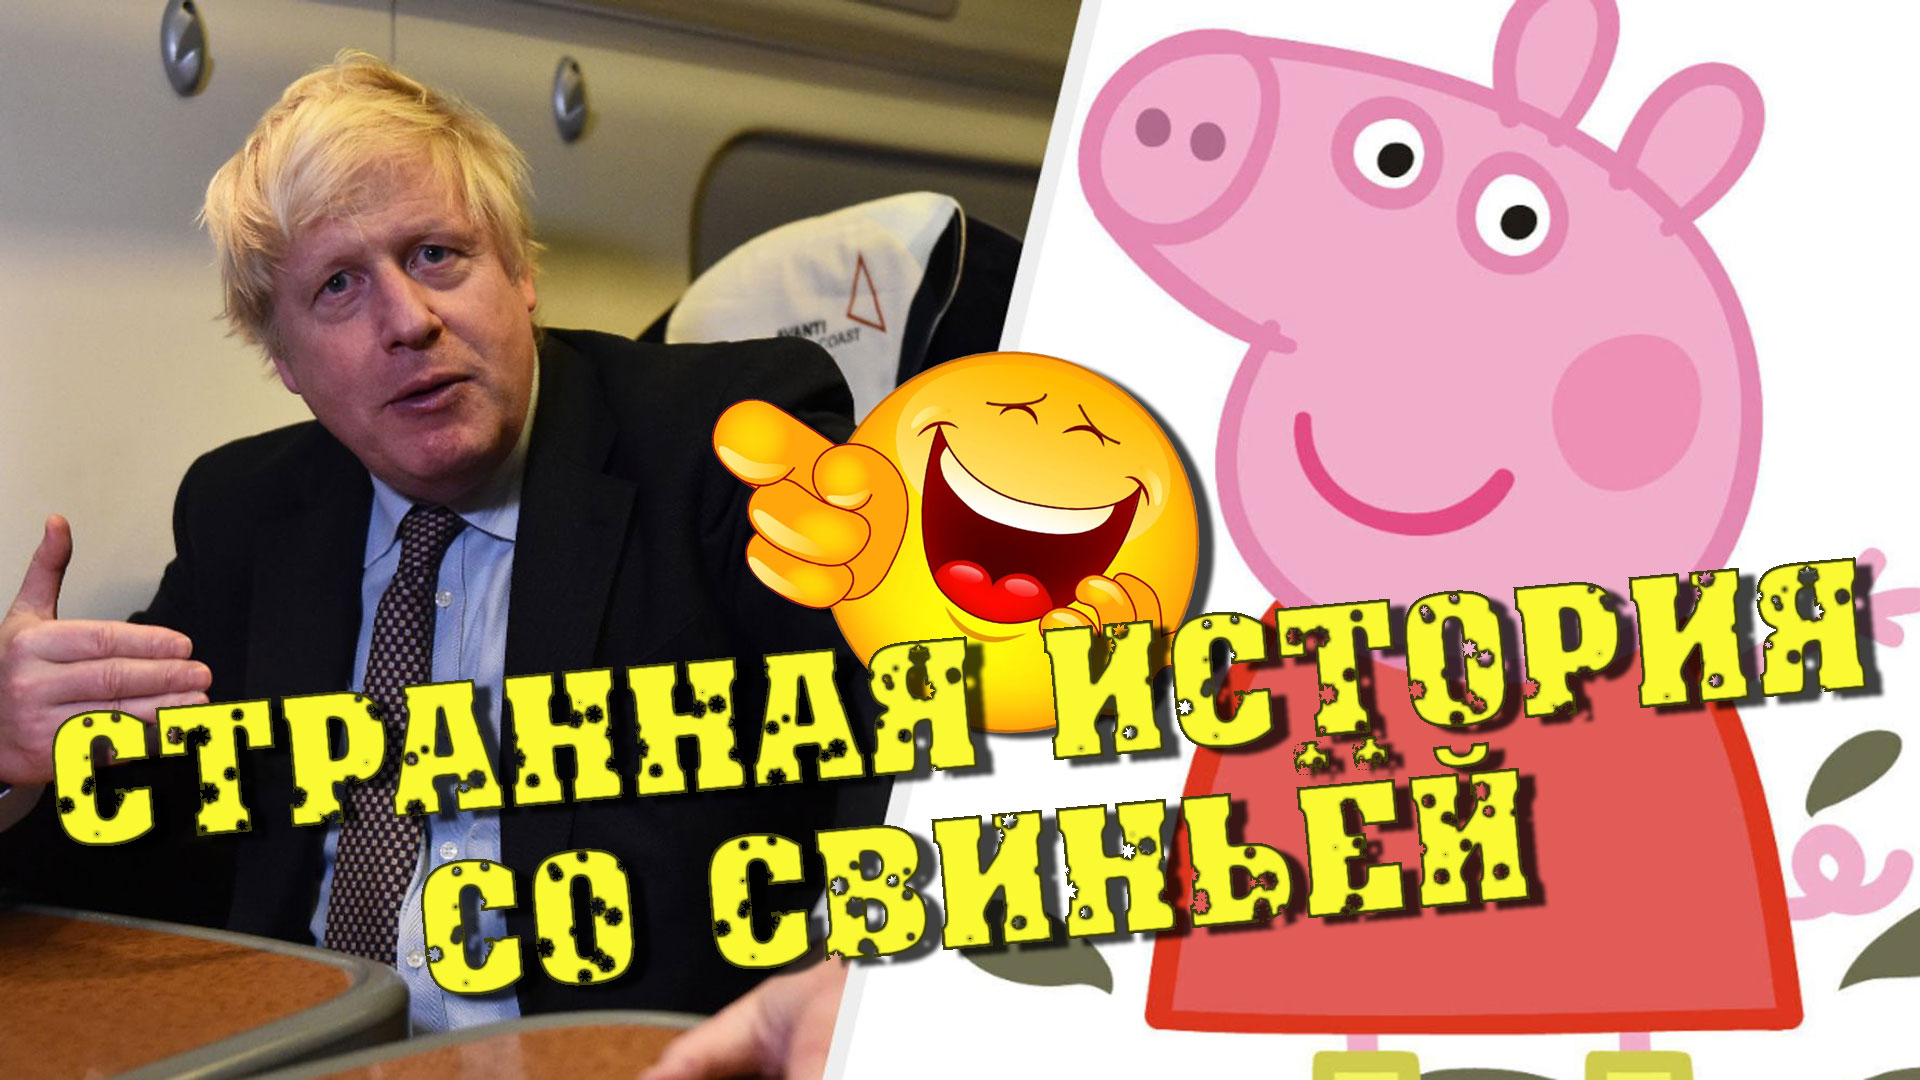 "ВДОХНОВЛЯЮЩИЙ ПУТИН !!!" 🤣 Борис Джонсон и свинья | Политический анекдот от Норкина рассмешил зал